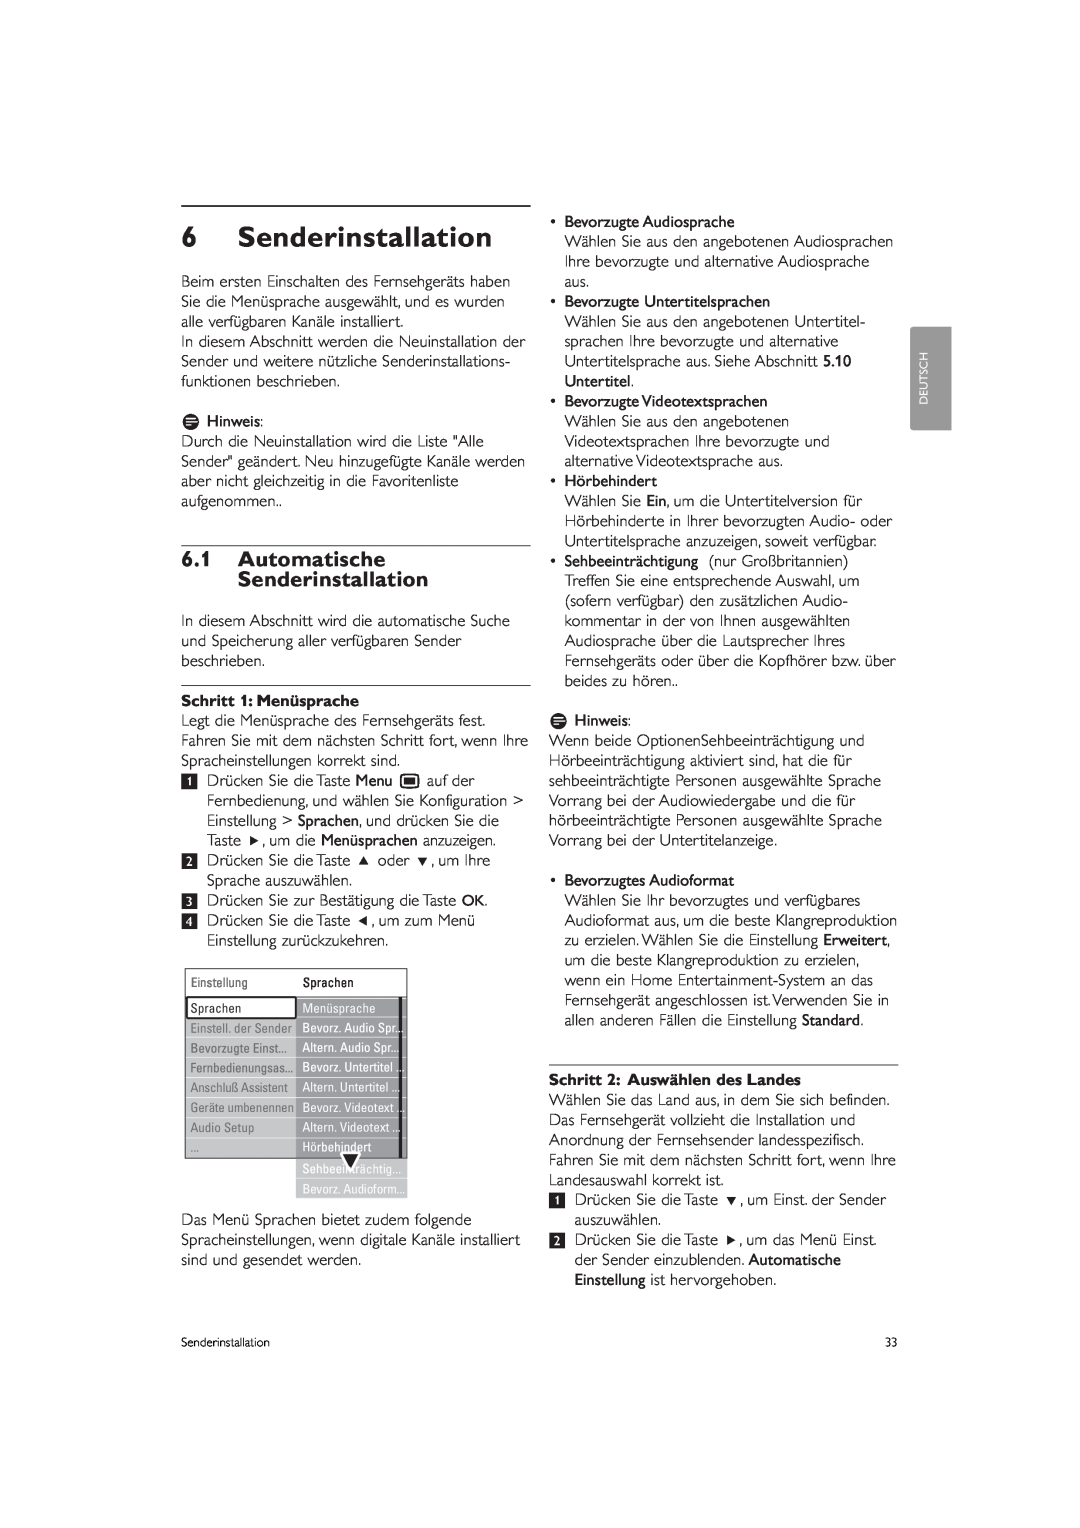 Philips 37PFL9903H/10 manual 6.1Automatische Senderinstallation, Schritt 1 Menüsprache, Schritt 2 Auswählen des Landes 